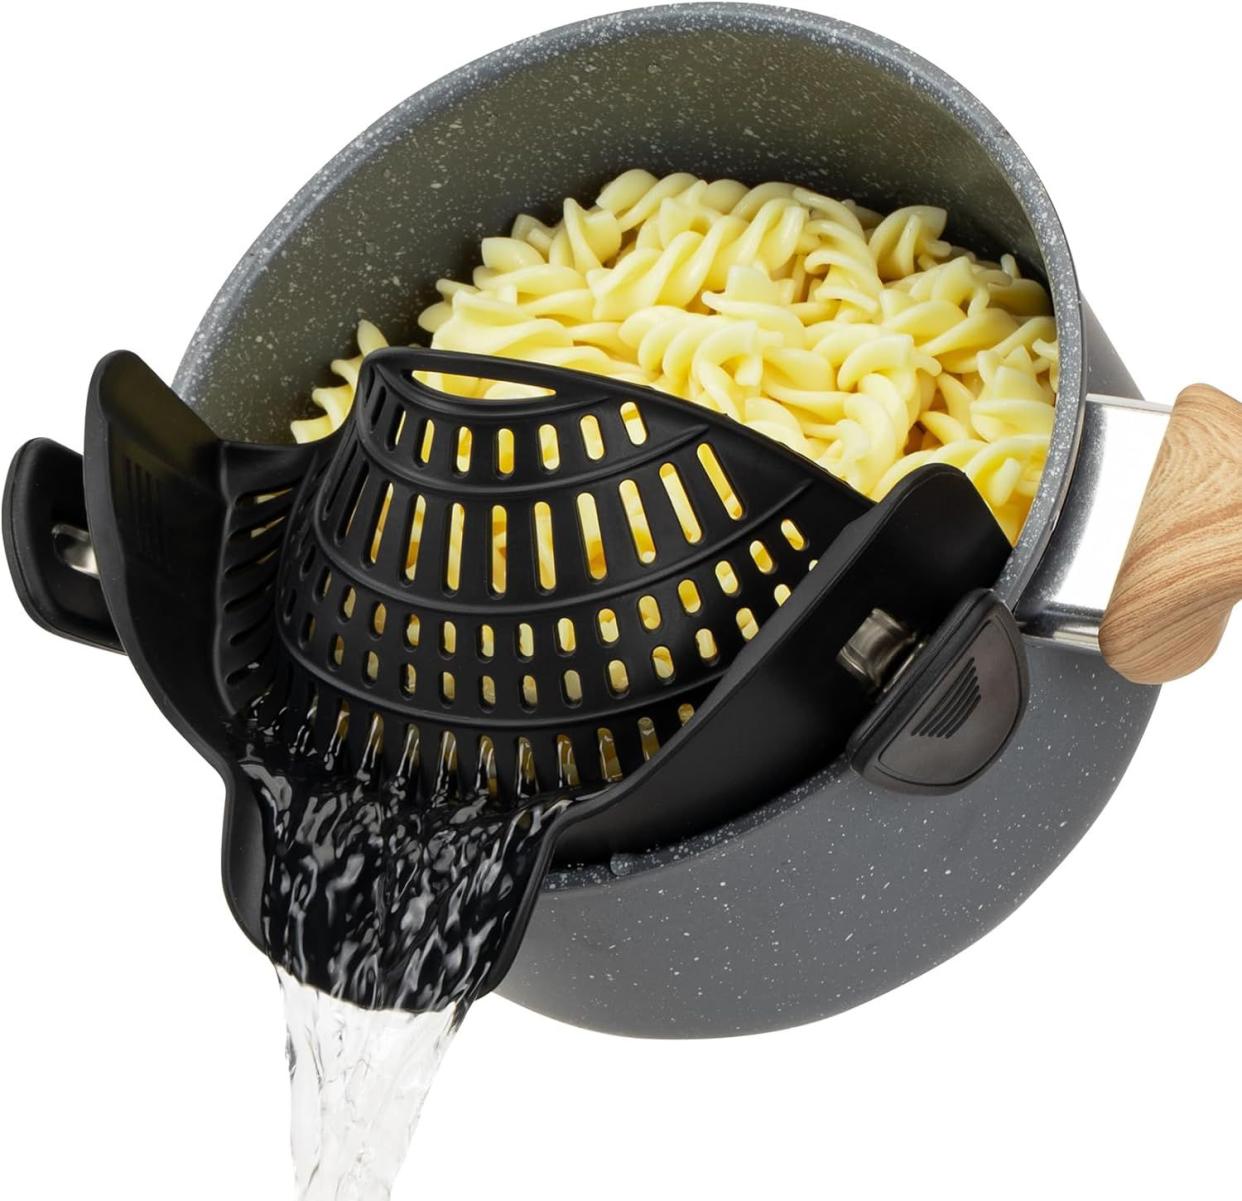 Clip on Pasta Strainer Colander